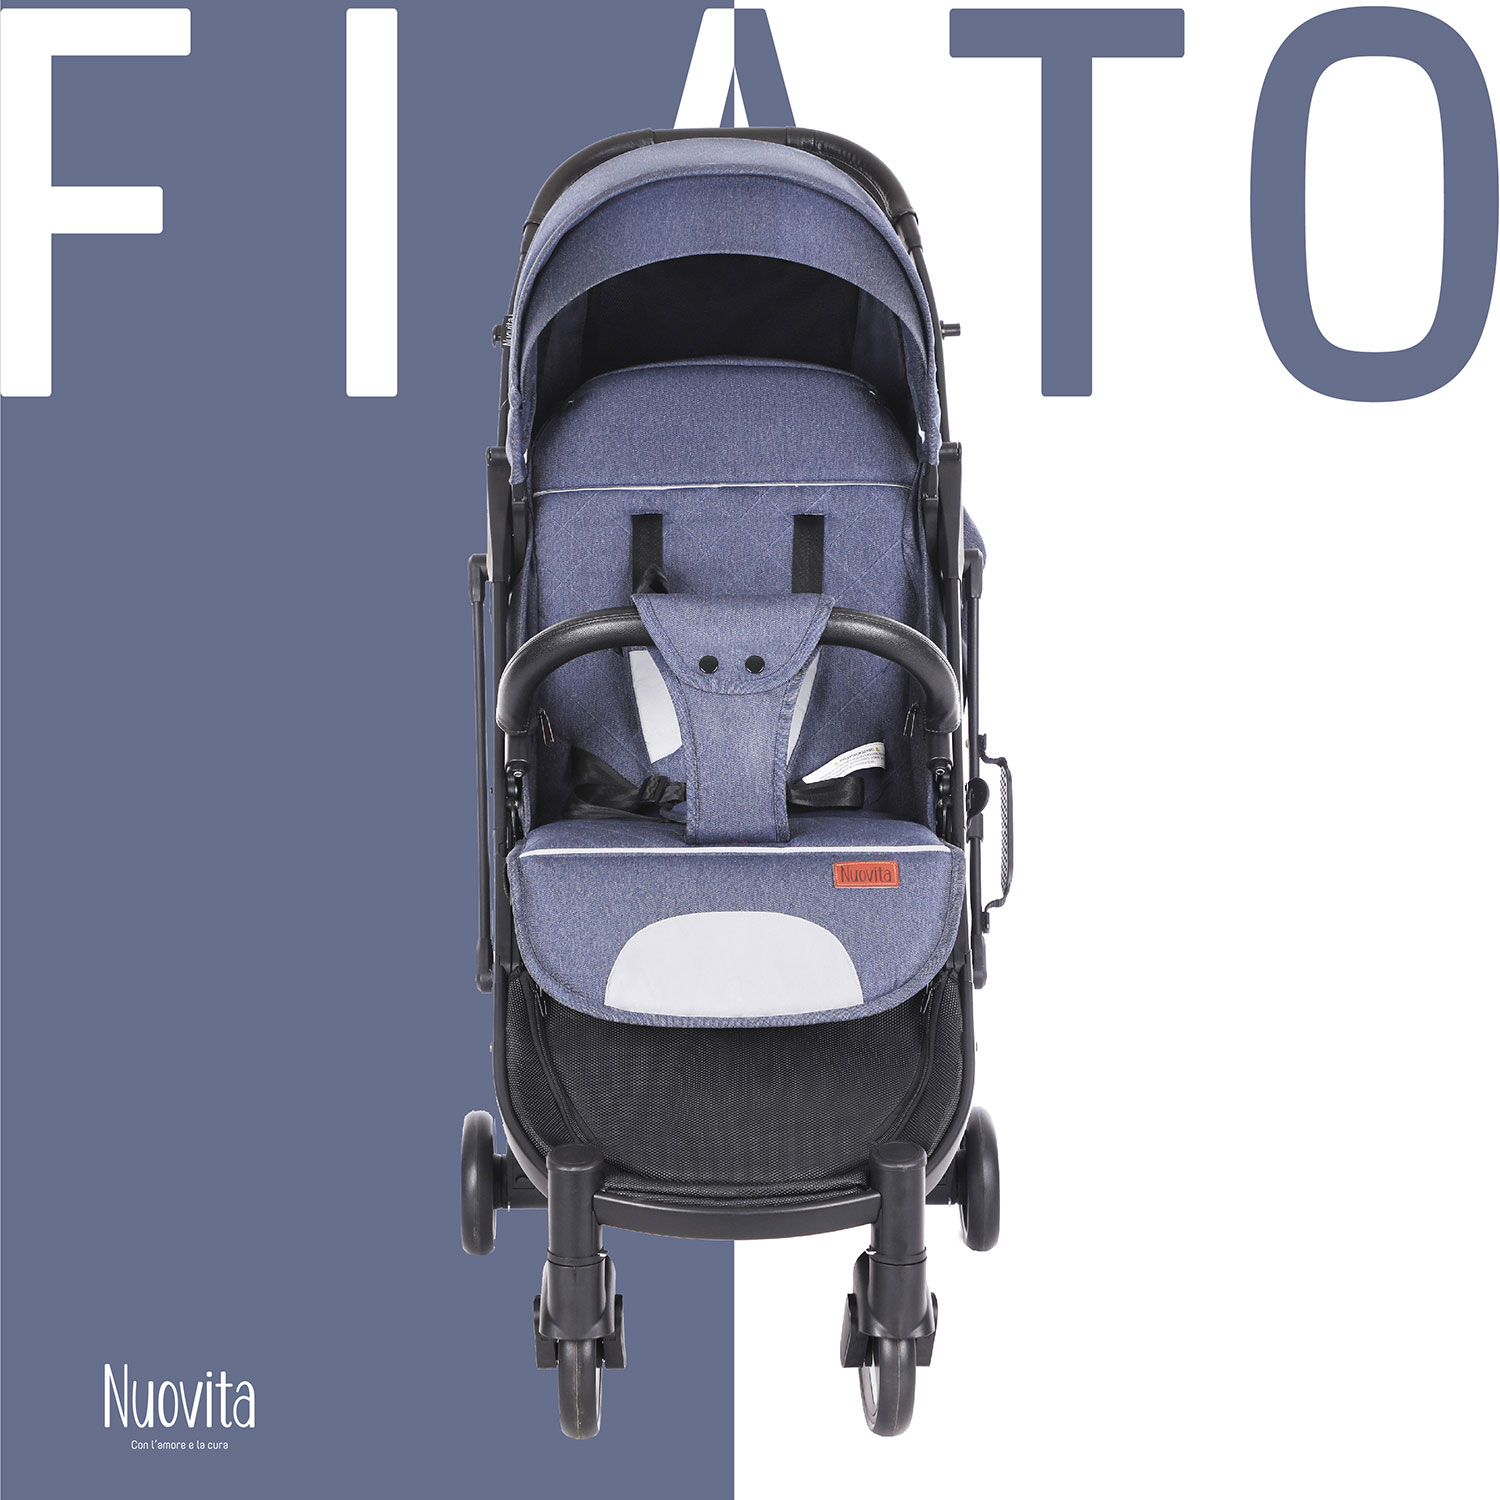 Прогулочная коляска Nuovita Fiato (Blu, Nero / Голубой, черный) прогулочная коляска nuovita fiato